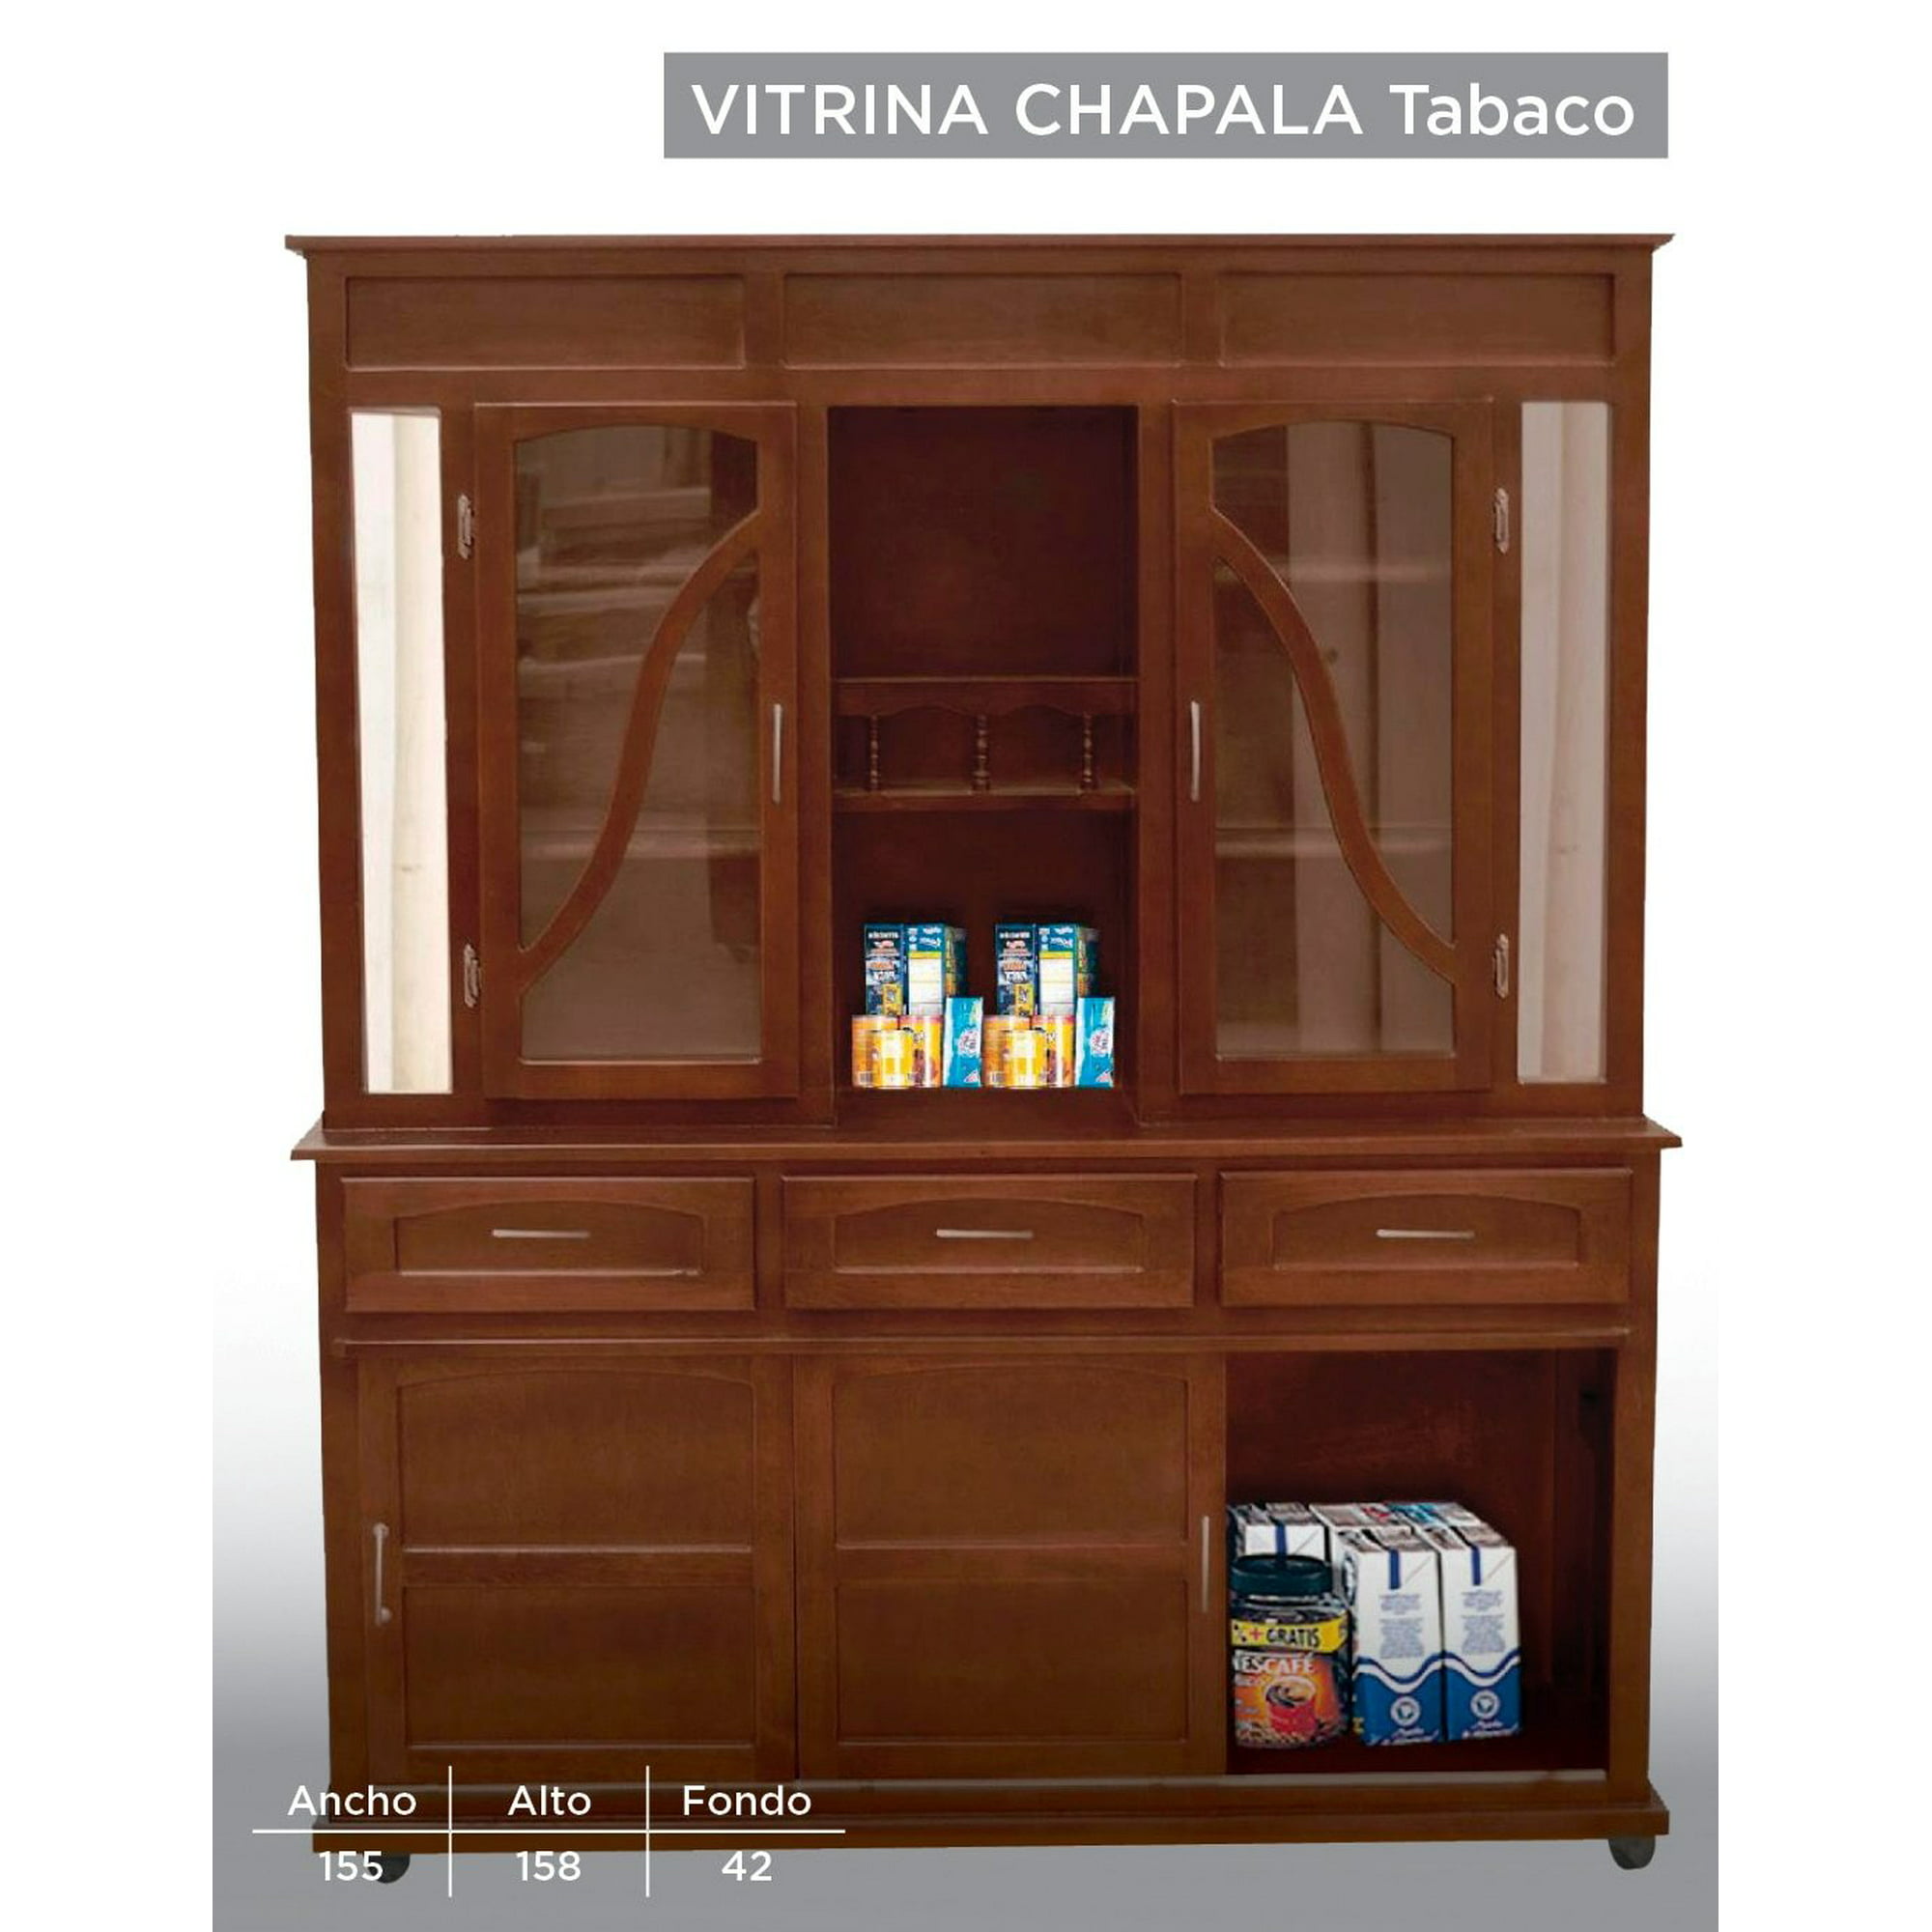 Mueble de Cocina Modular Orange con Cajonera 140cm Blanco/Rojo